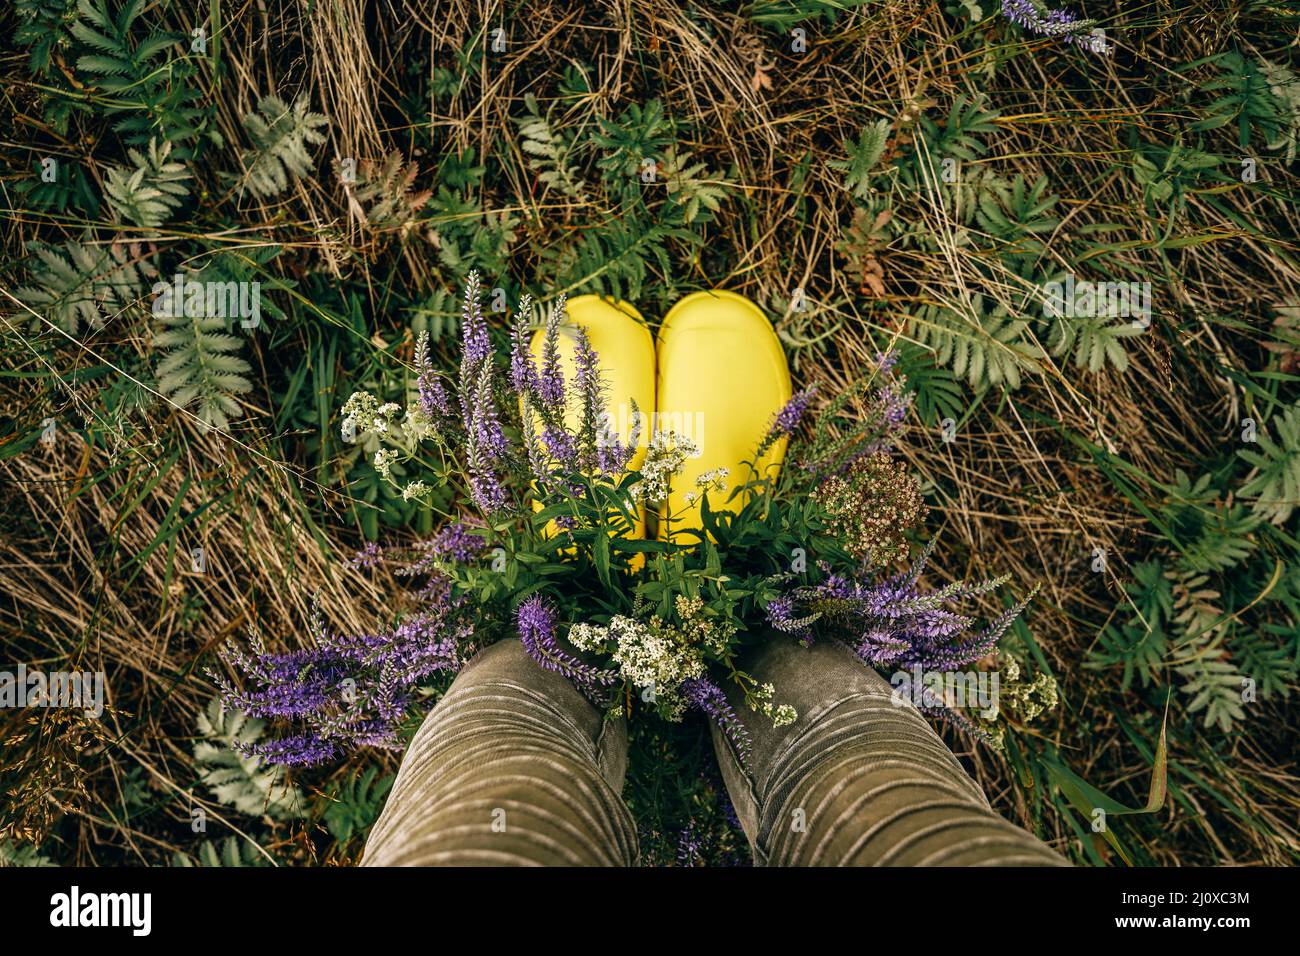 Bottes en caoutchouc jaune avec bouquet de fleurs sauvages. Vue de dessus. Banque D'Images